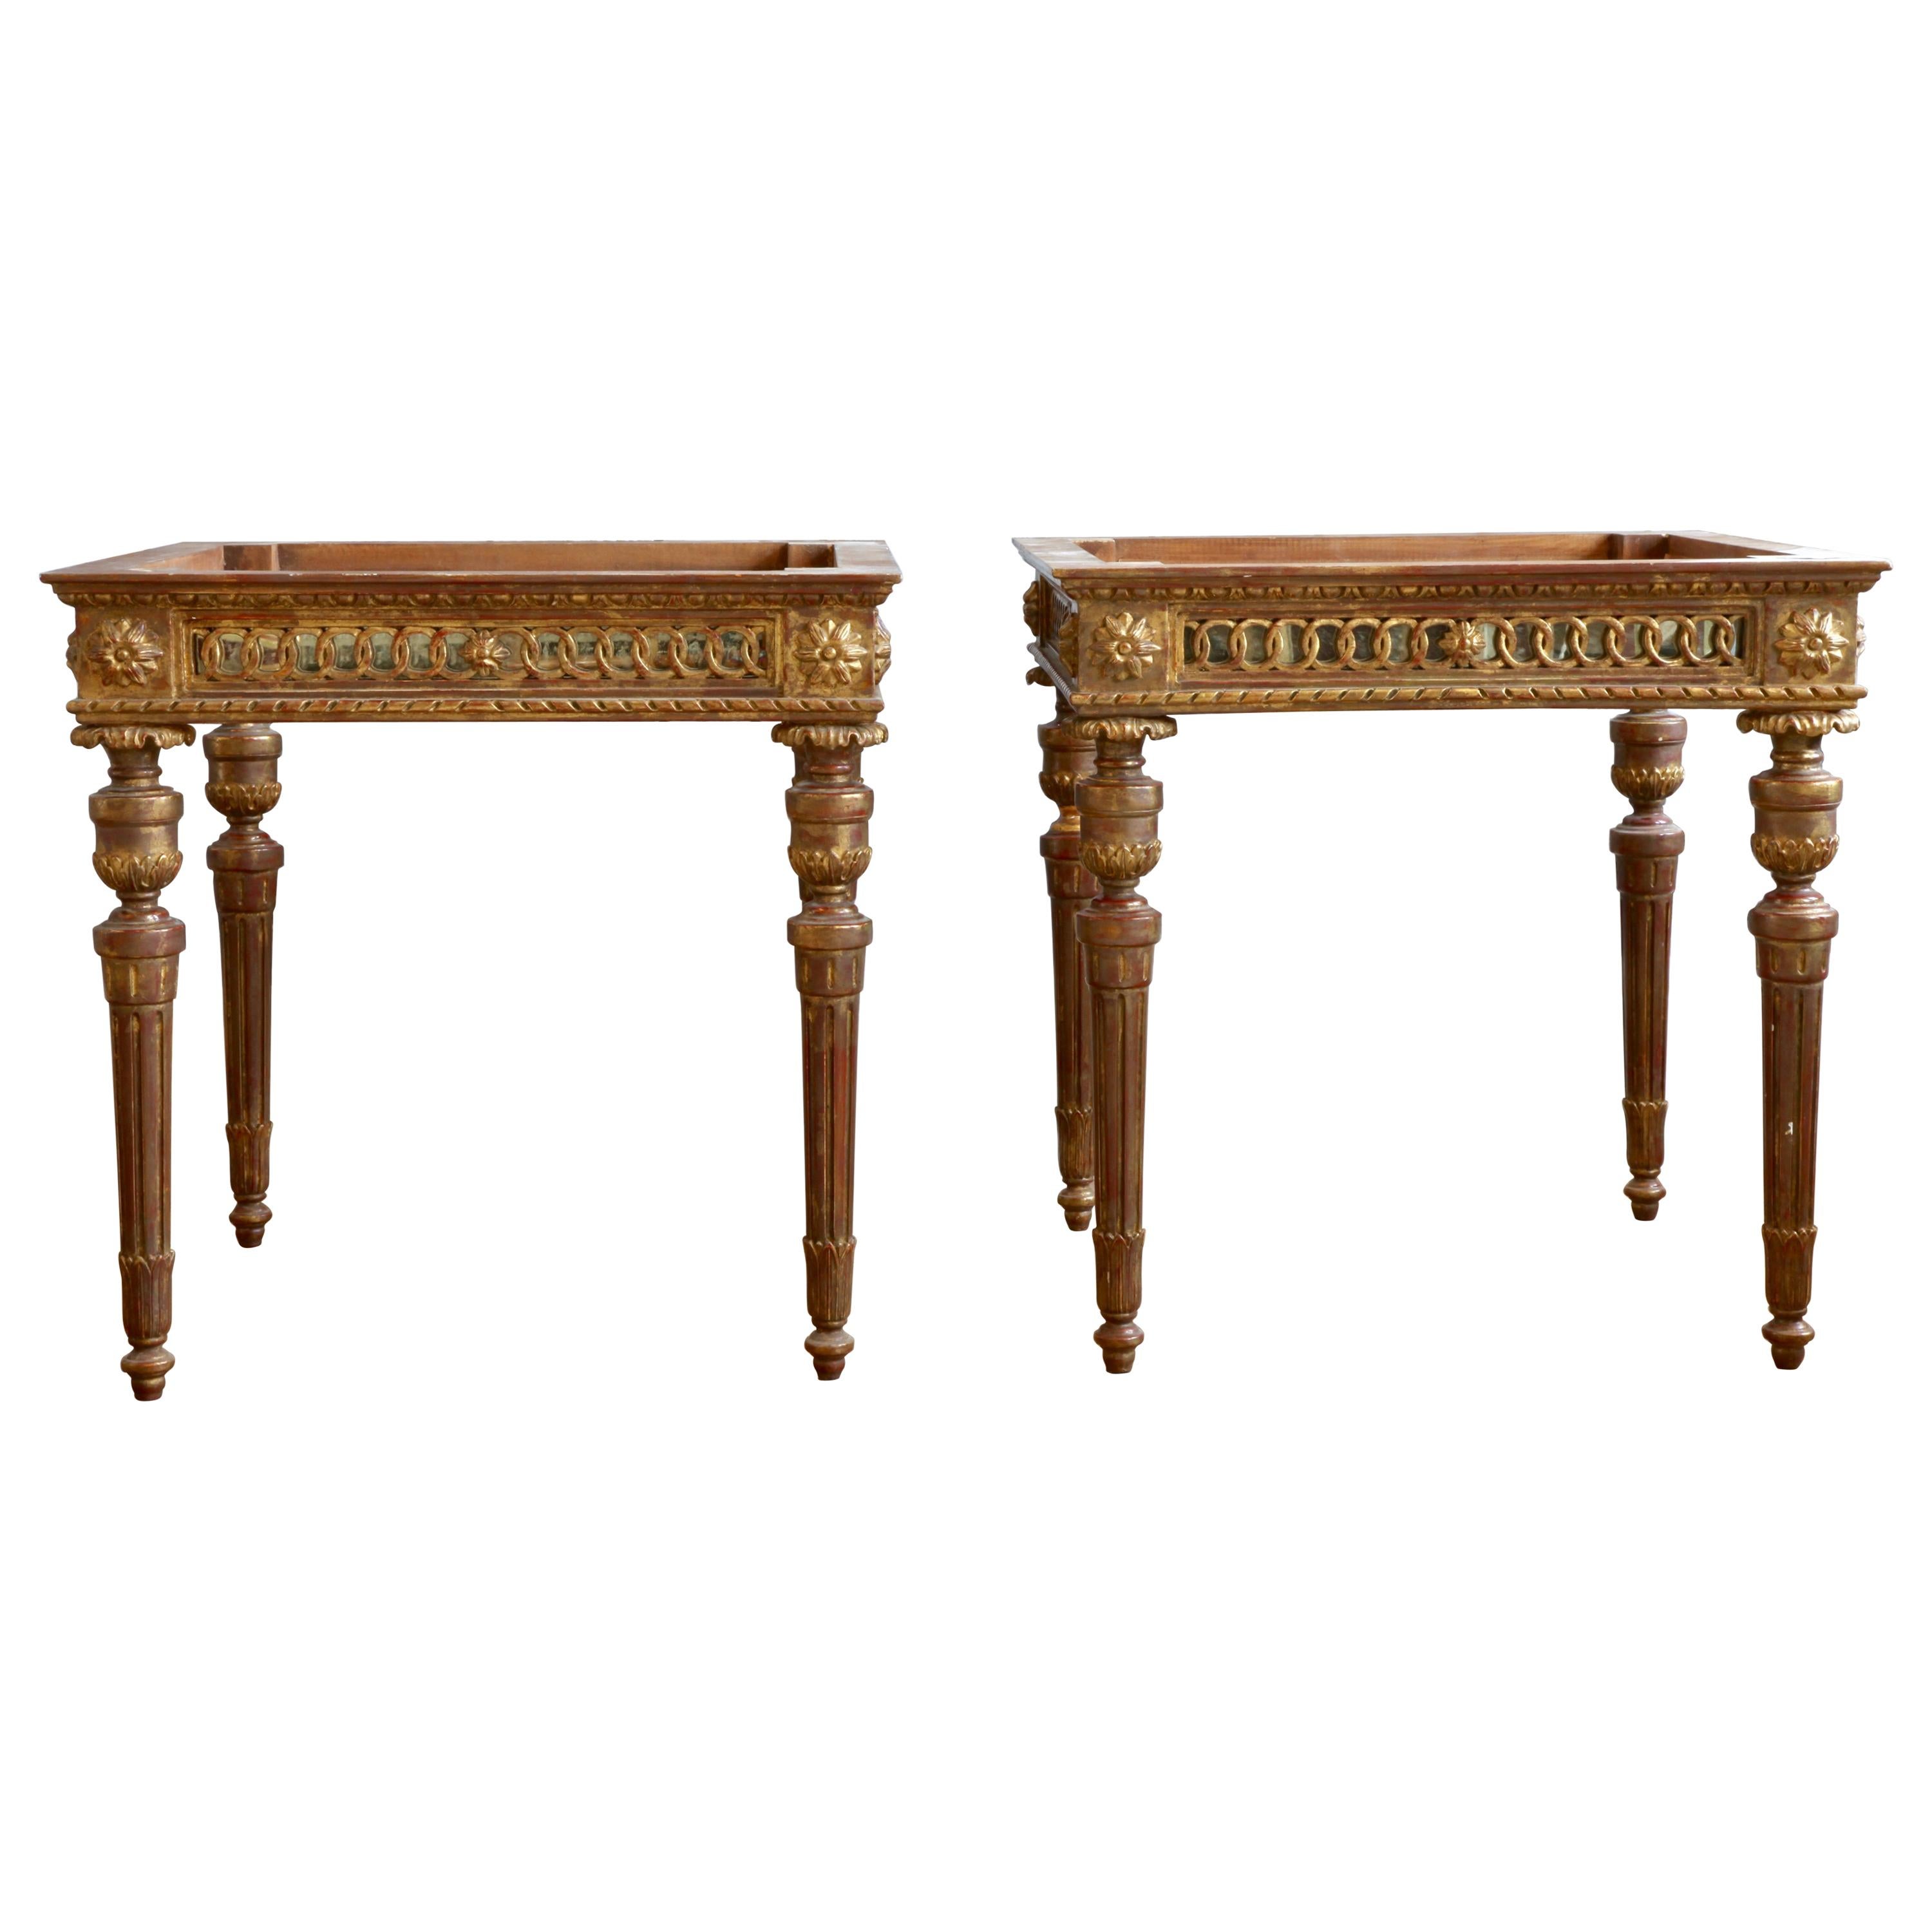 Tables d'appoint en bois doré de style Louis XVI fabriquées par La Maison London